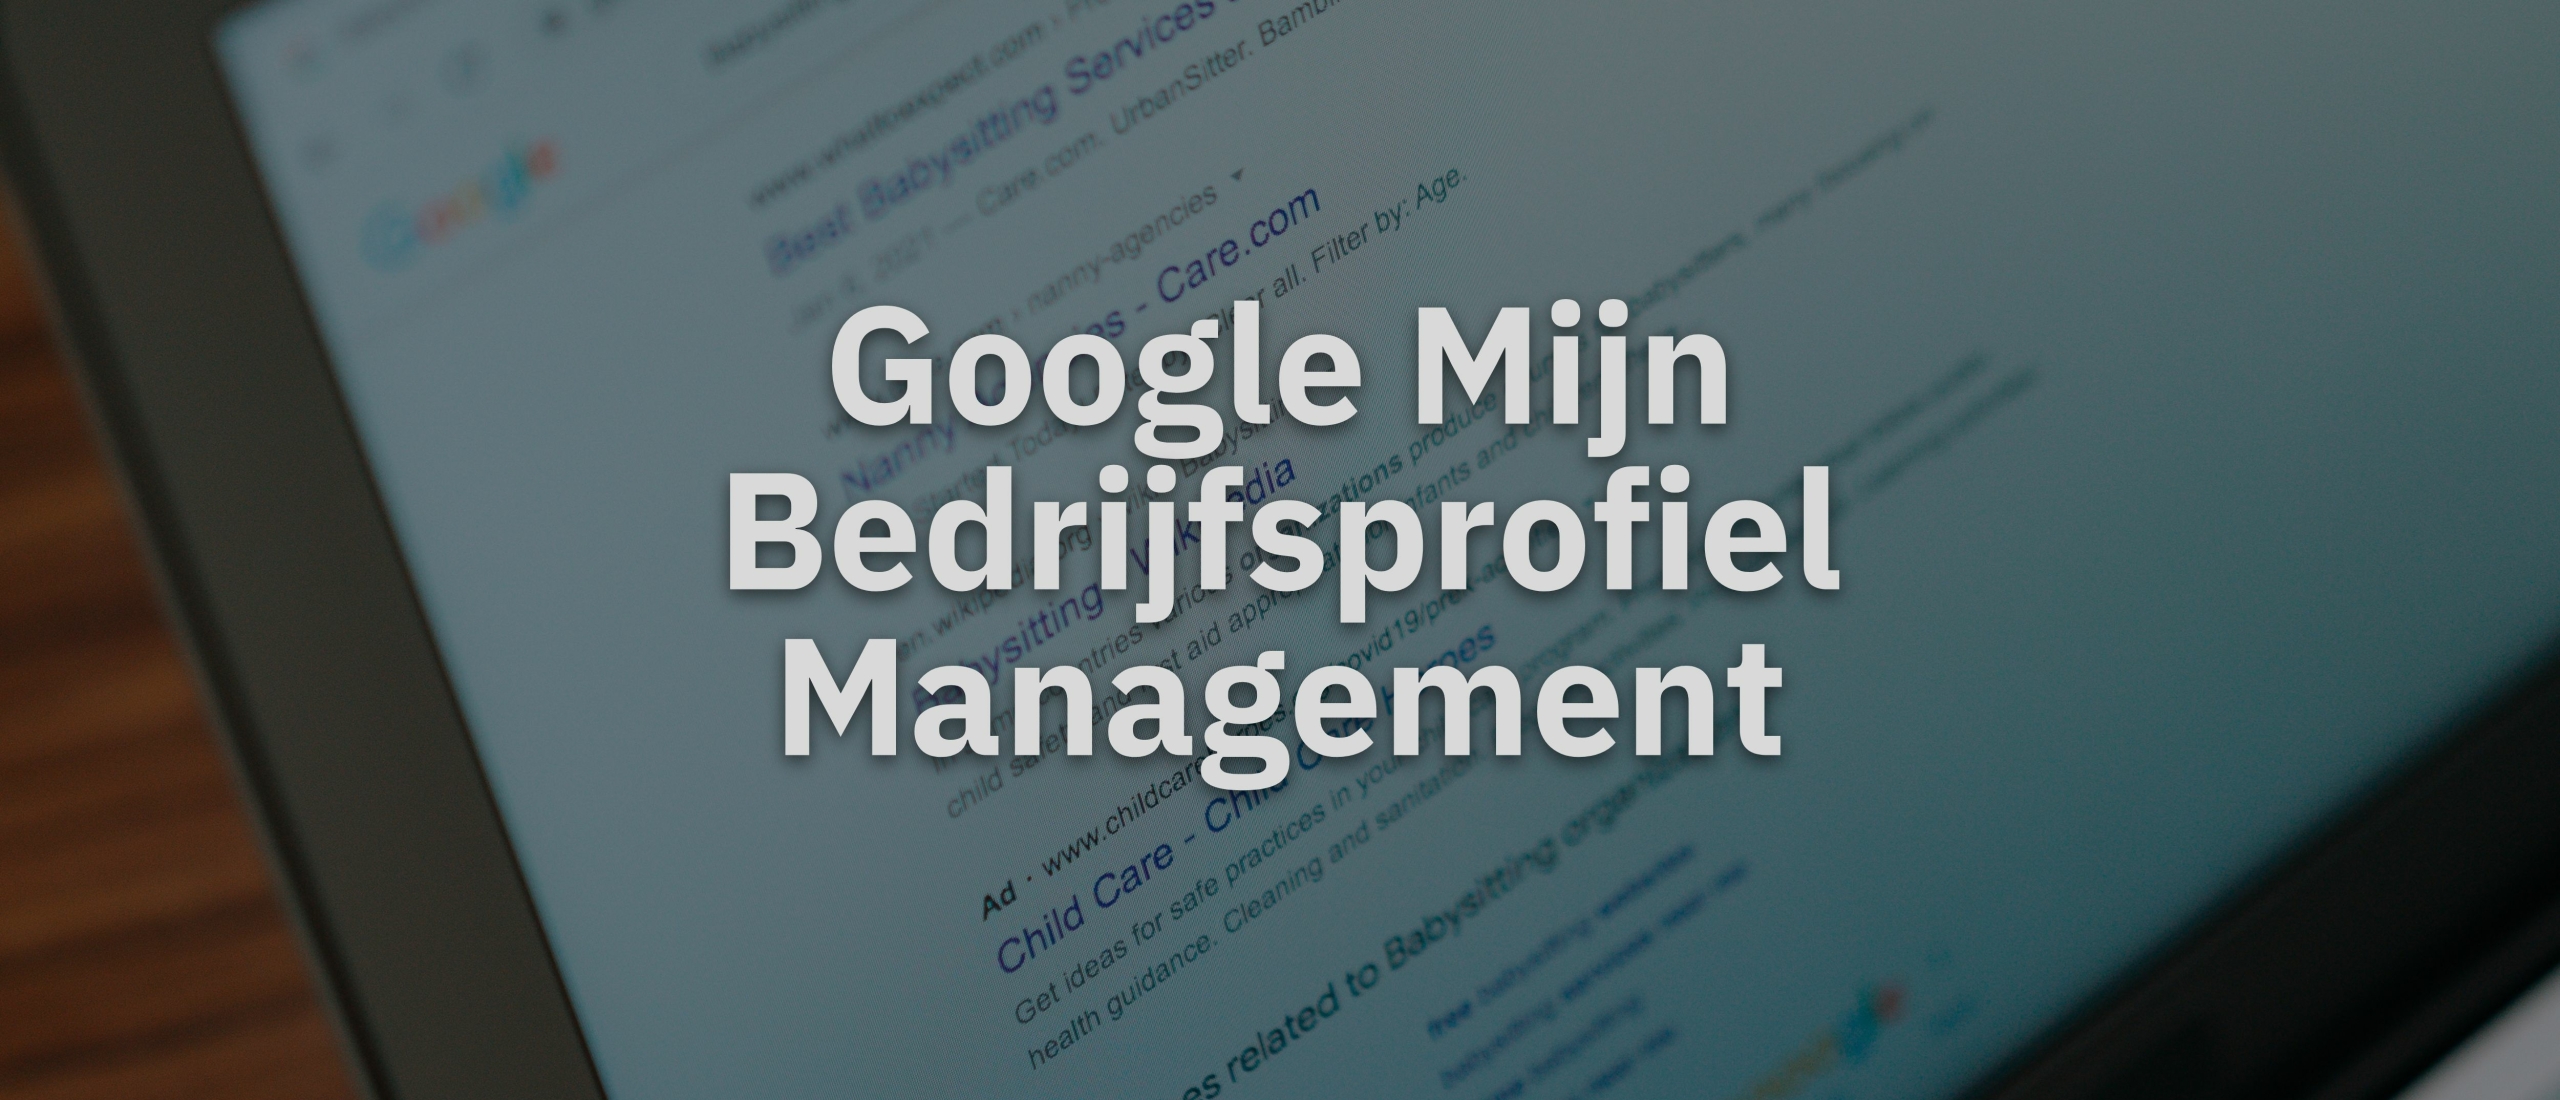 Google Mijn Bedrijfsprofiel Management